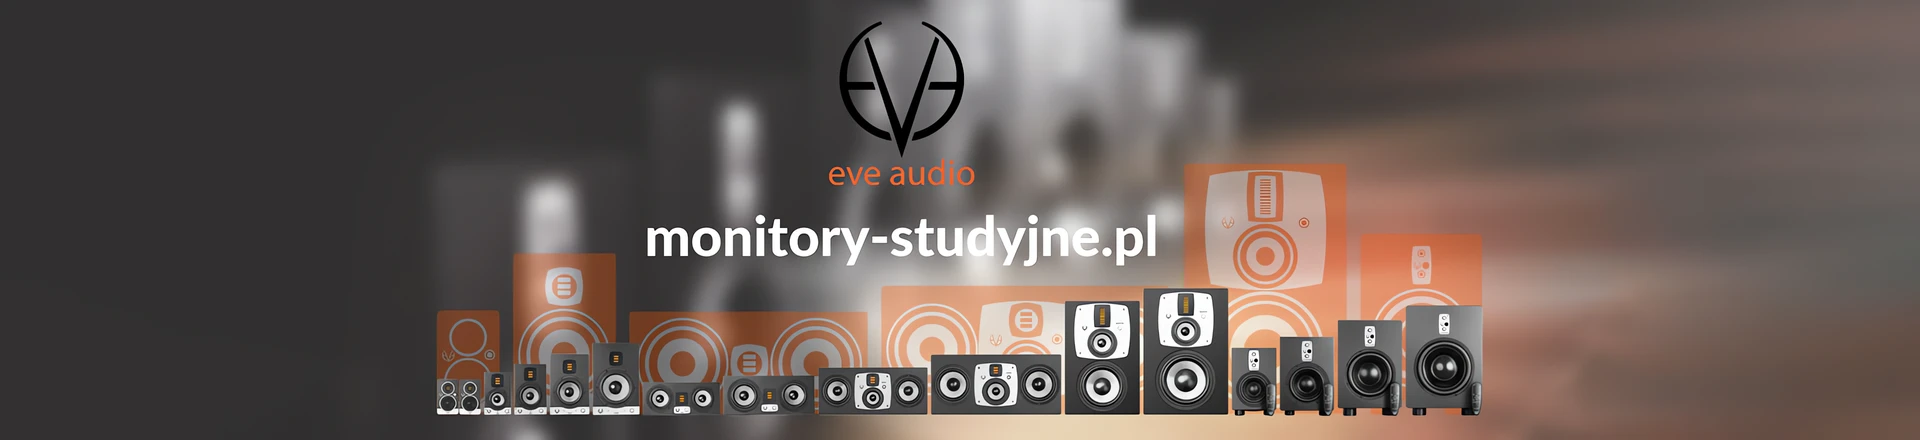 Audiotech startuje z nową stroną o monitorach studyjnych: monitory-studyjne.pl